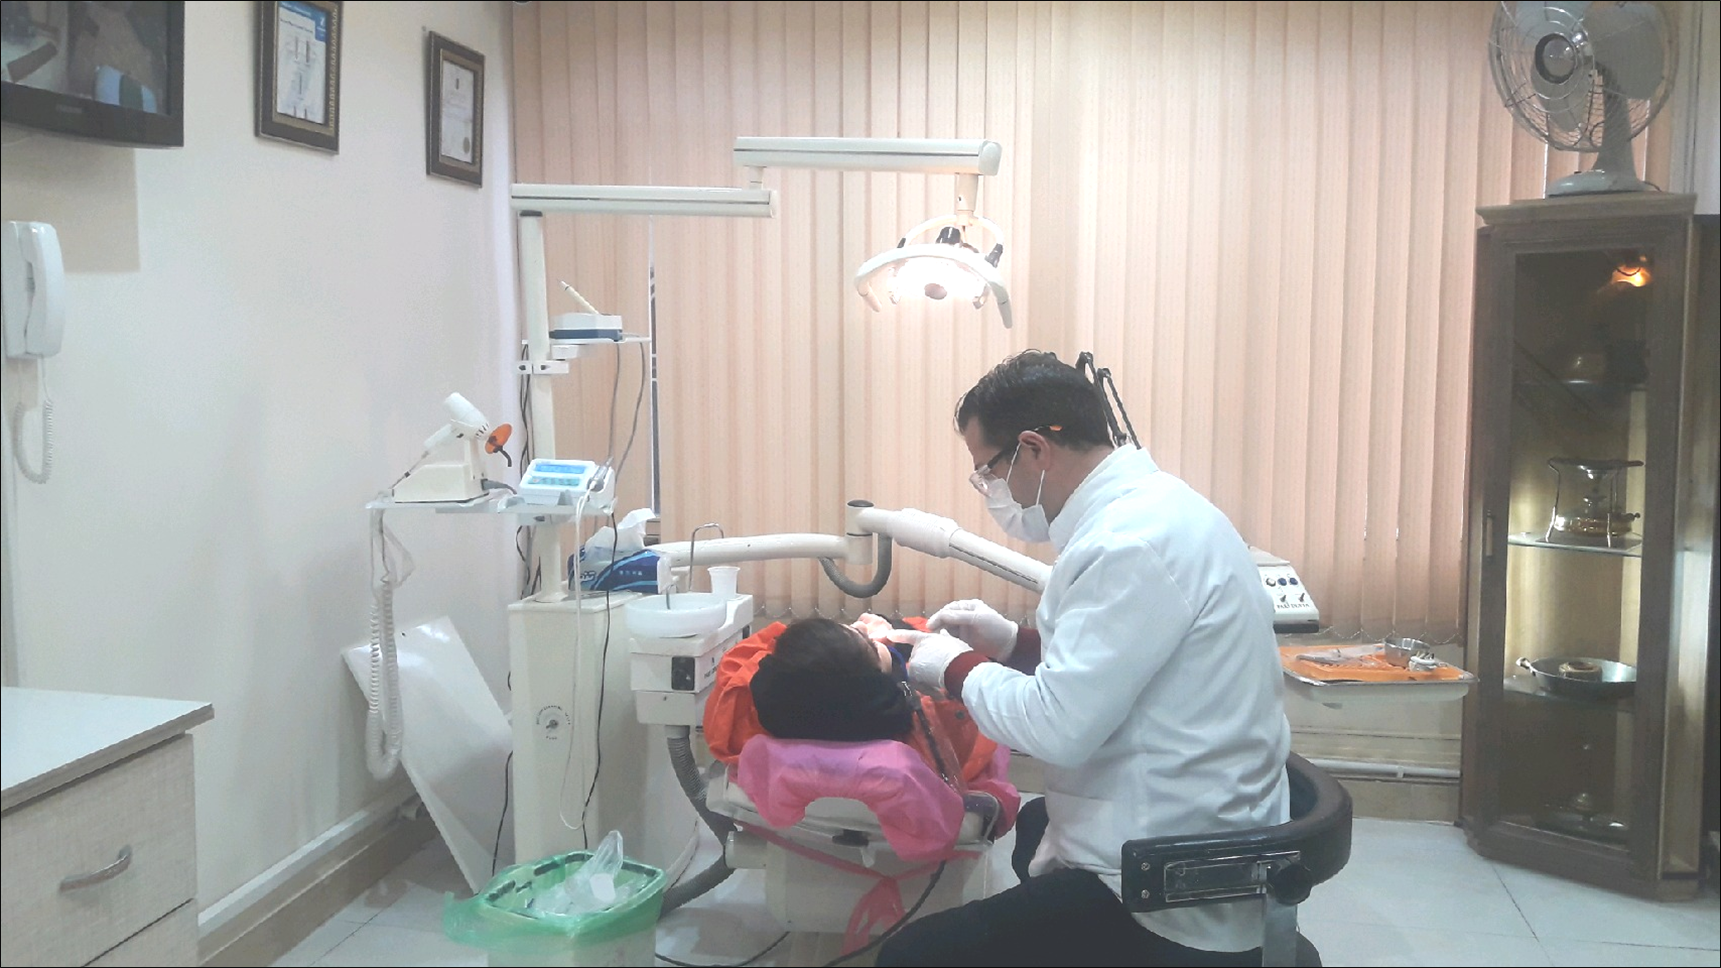 دکتر پور مهری  دندانپزشک در گفتگو اختصاصی  با آناک: الزام اولویت قرار گرفتن حوزه درمانی در کشور